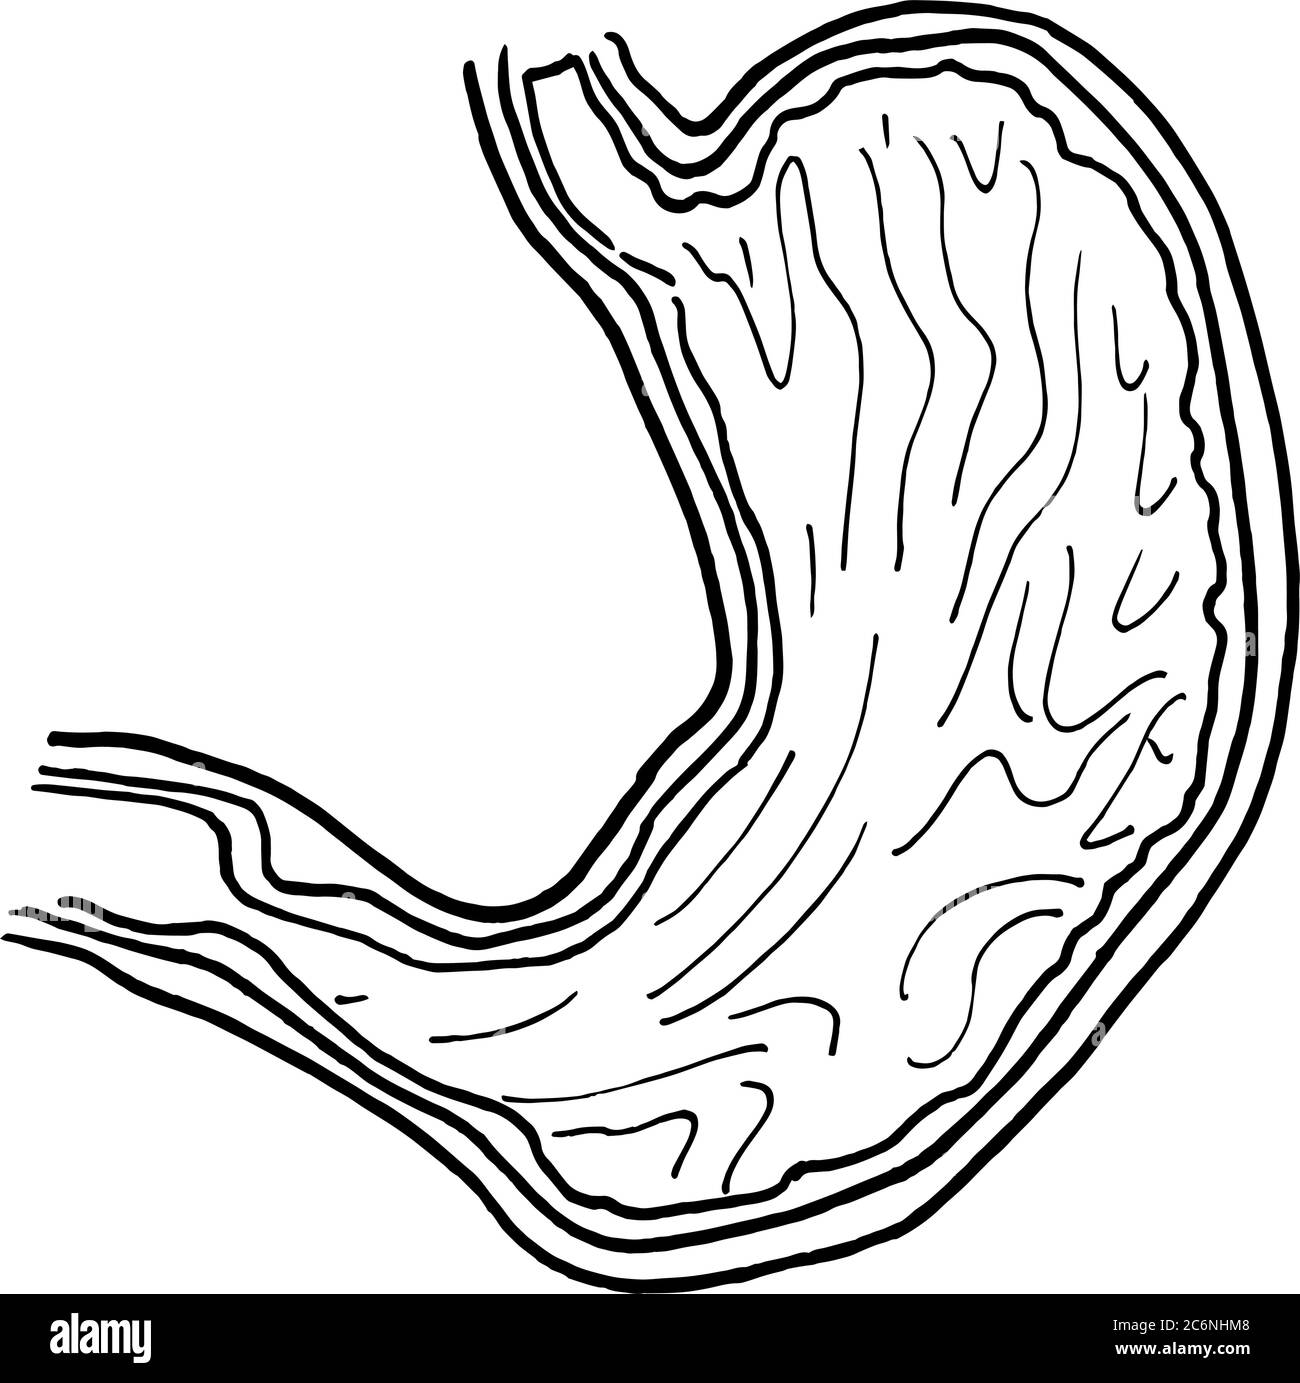 Konturvektor Umriss Zeichnung des menschlichen Magenorgans. Medizinische Design editierbare Vorlage Stock Vektor